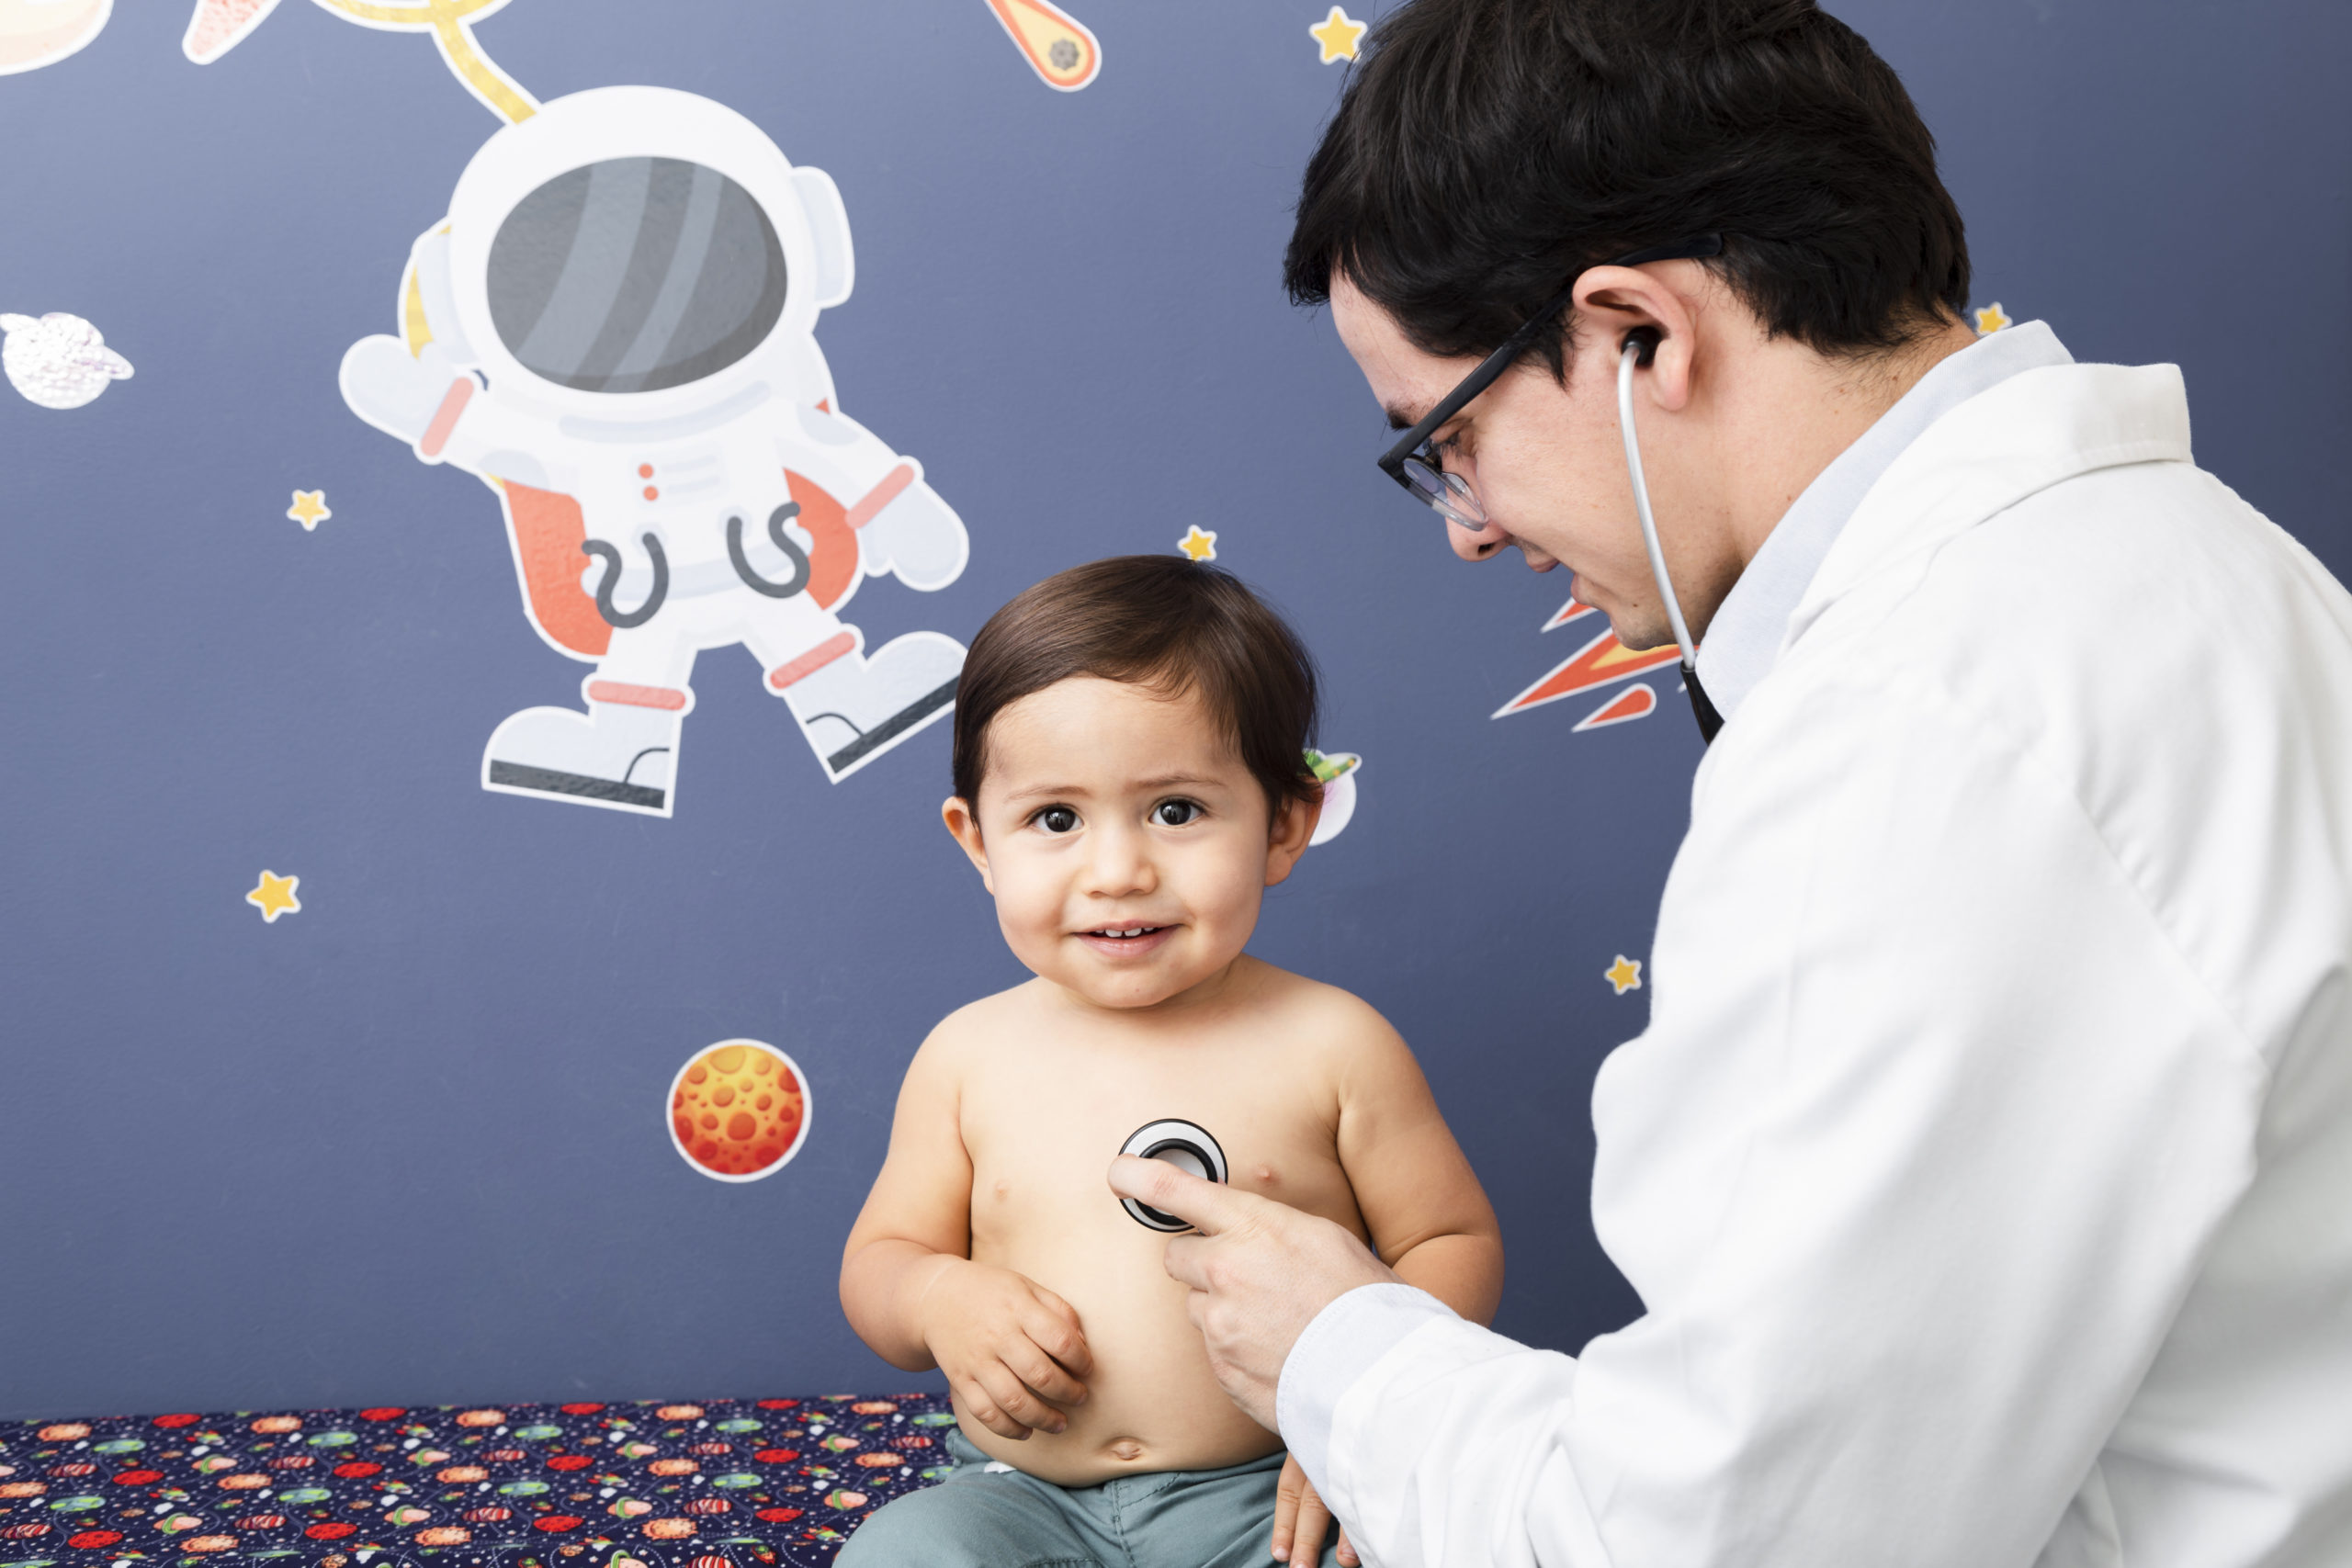 medico examinando criança